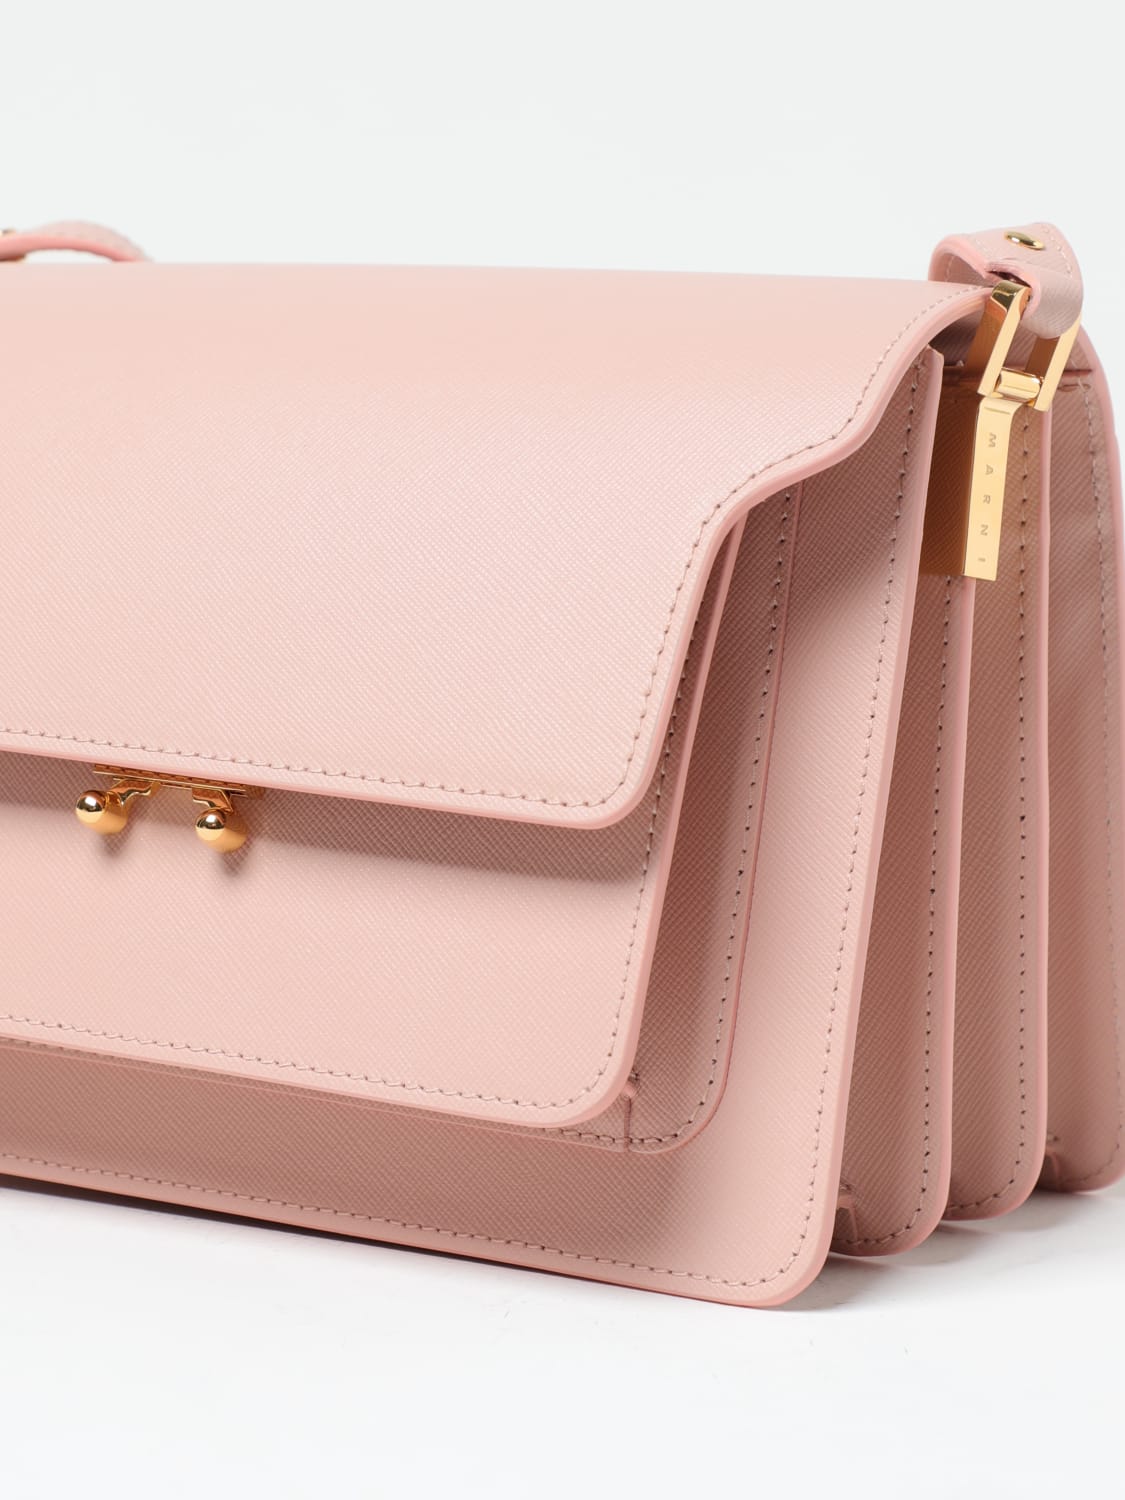 Marni Trunk Leather Shoulder Bag Medium / Pink